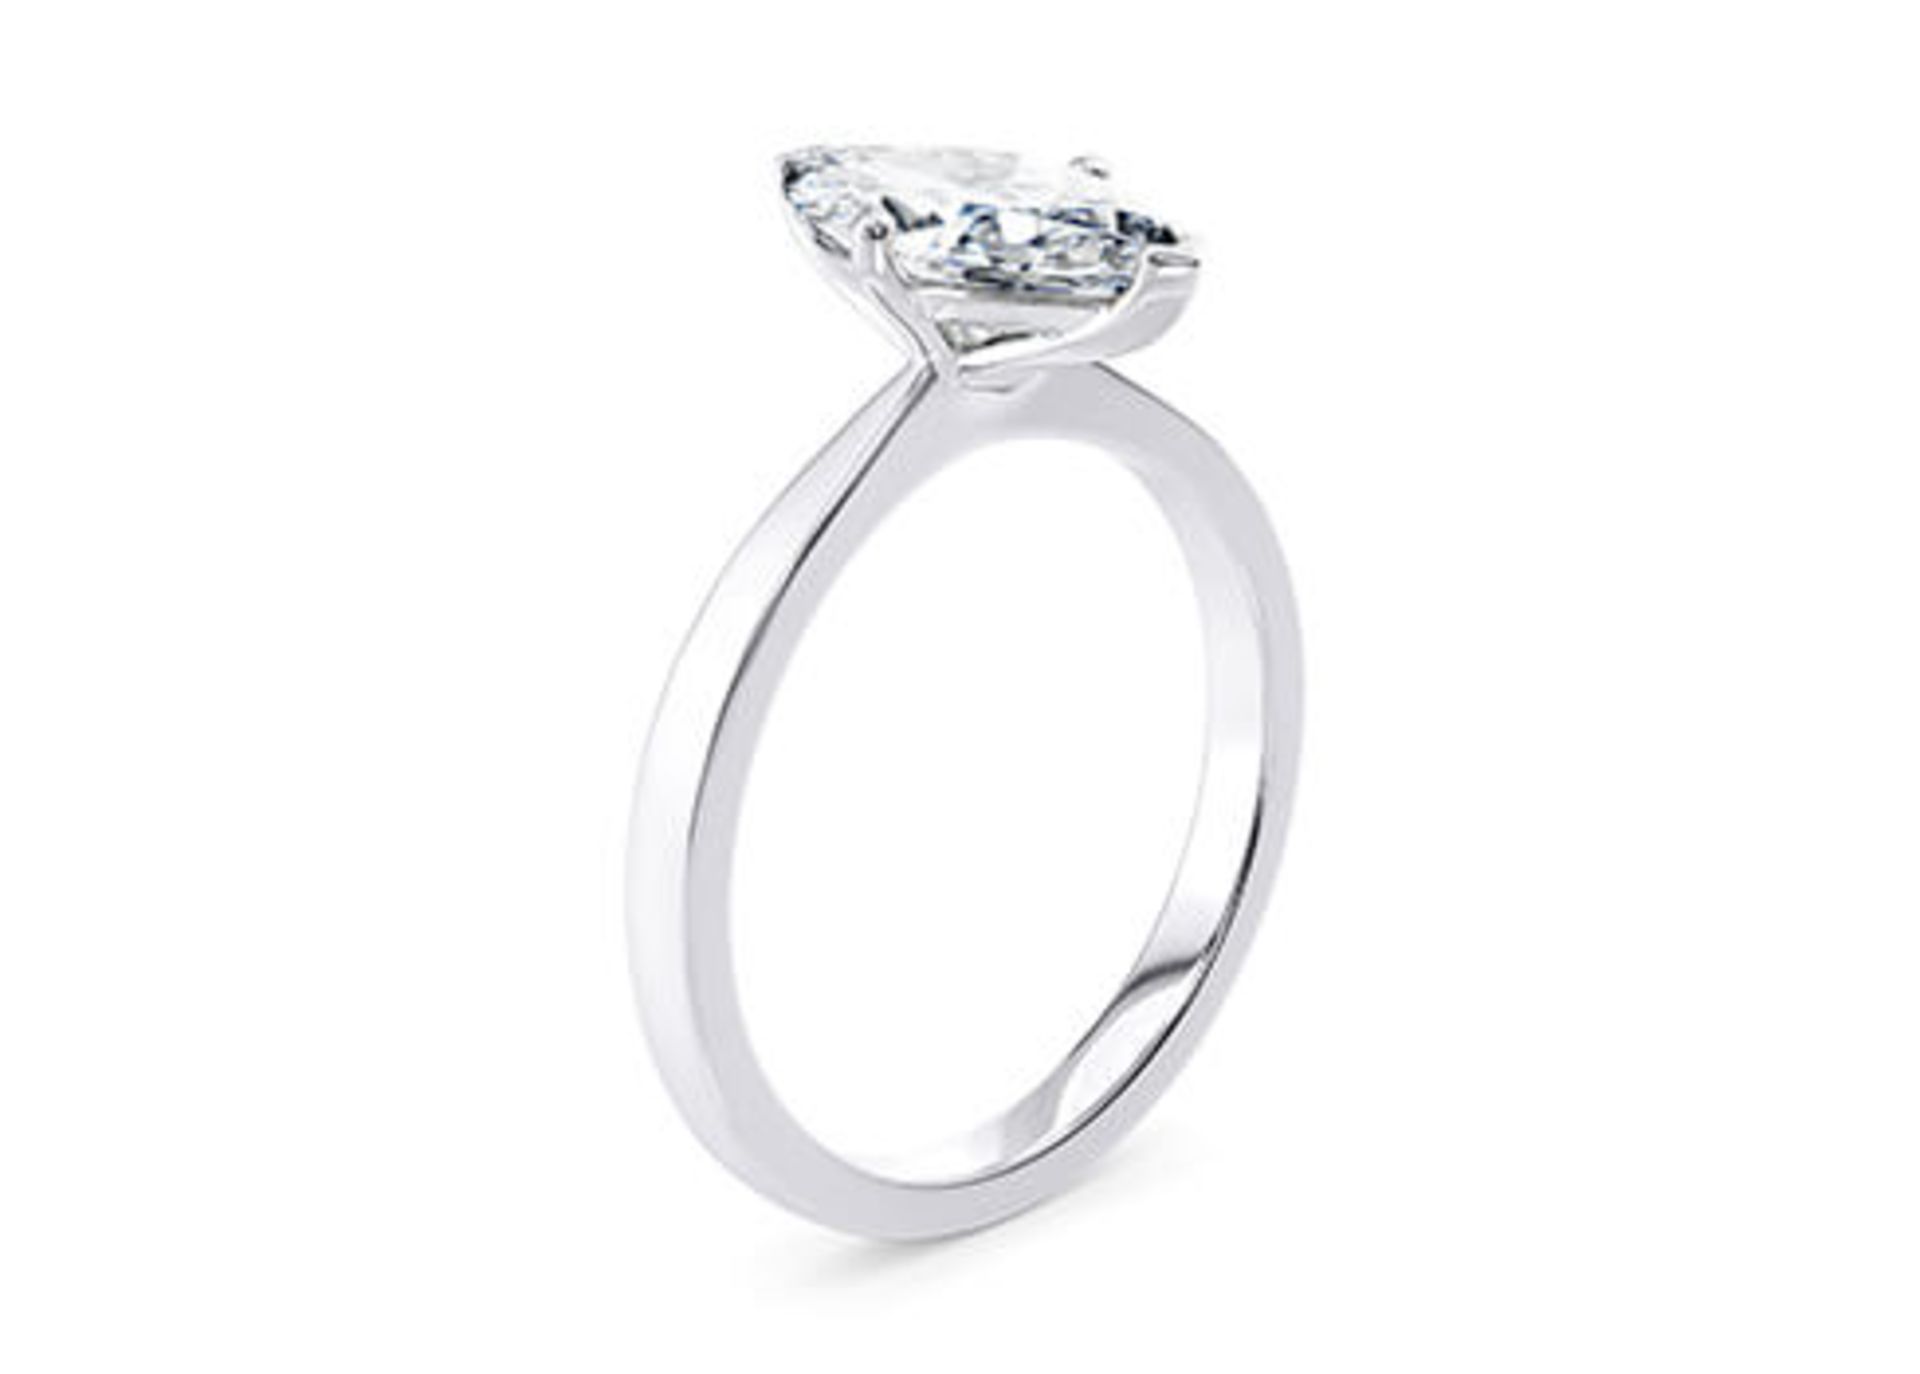 ** ON SALE ** Marquise Cut Diamond Platinum Ring 2.16Carat D Colour VS2 Clarity EX EX - IGI - Image 2 of 3